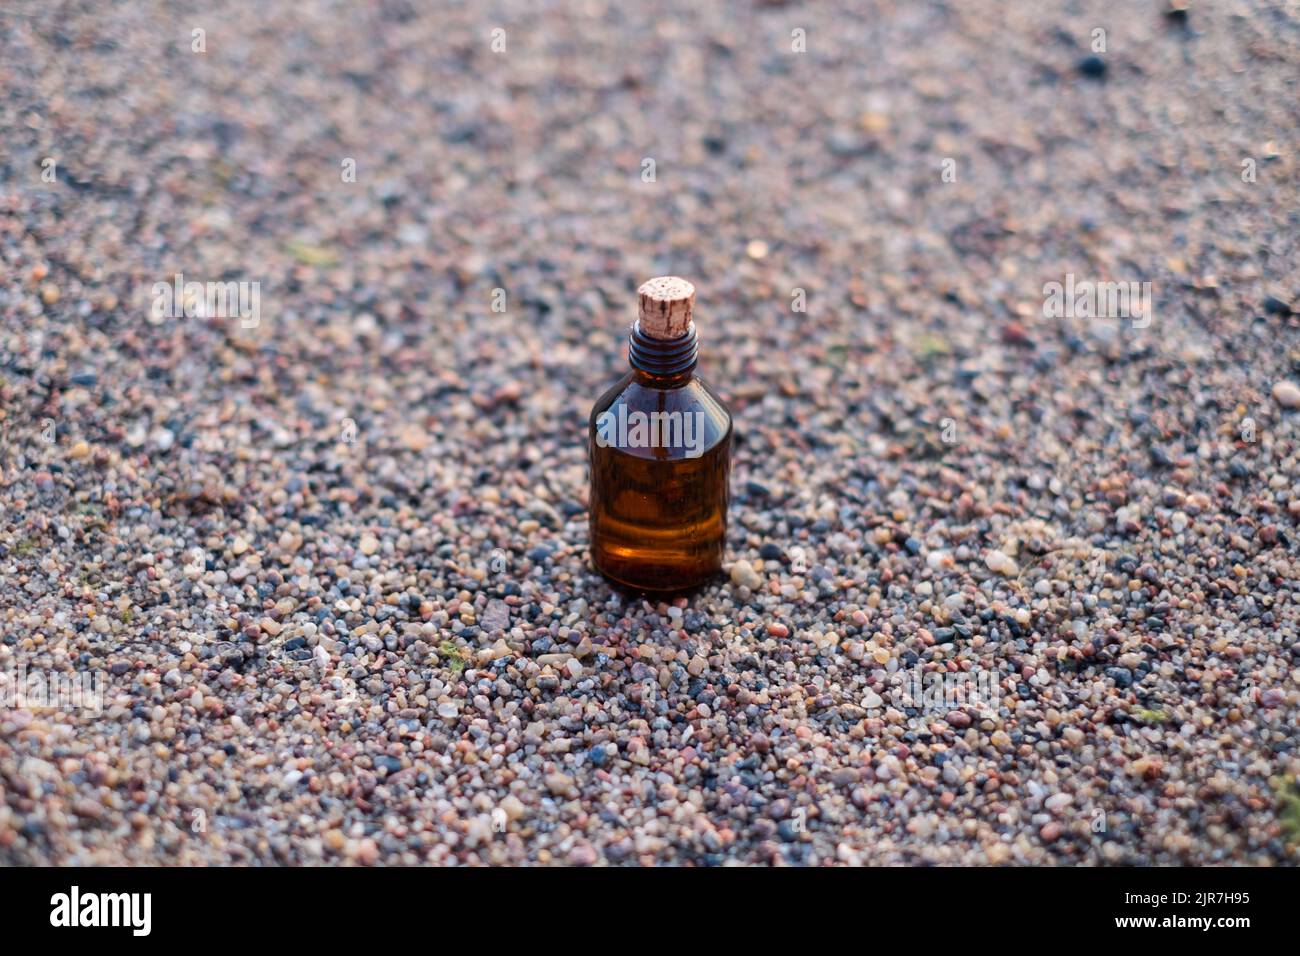 Bouteille d'huile essentielle sur une plage avec des rochers. Petite bouteille de médecine brune en fond de nature. Huile de chanvre biologique CBD. Banque D'Images